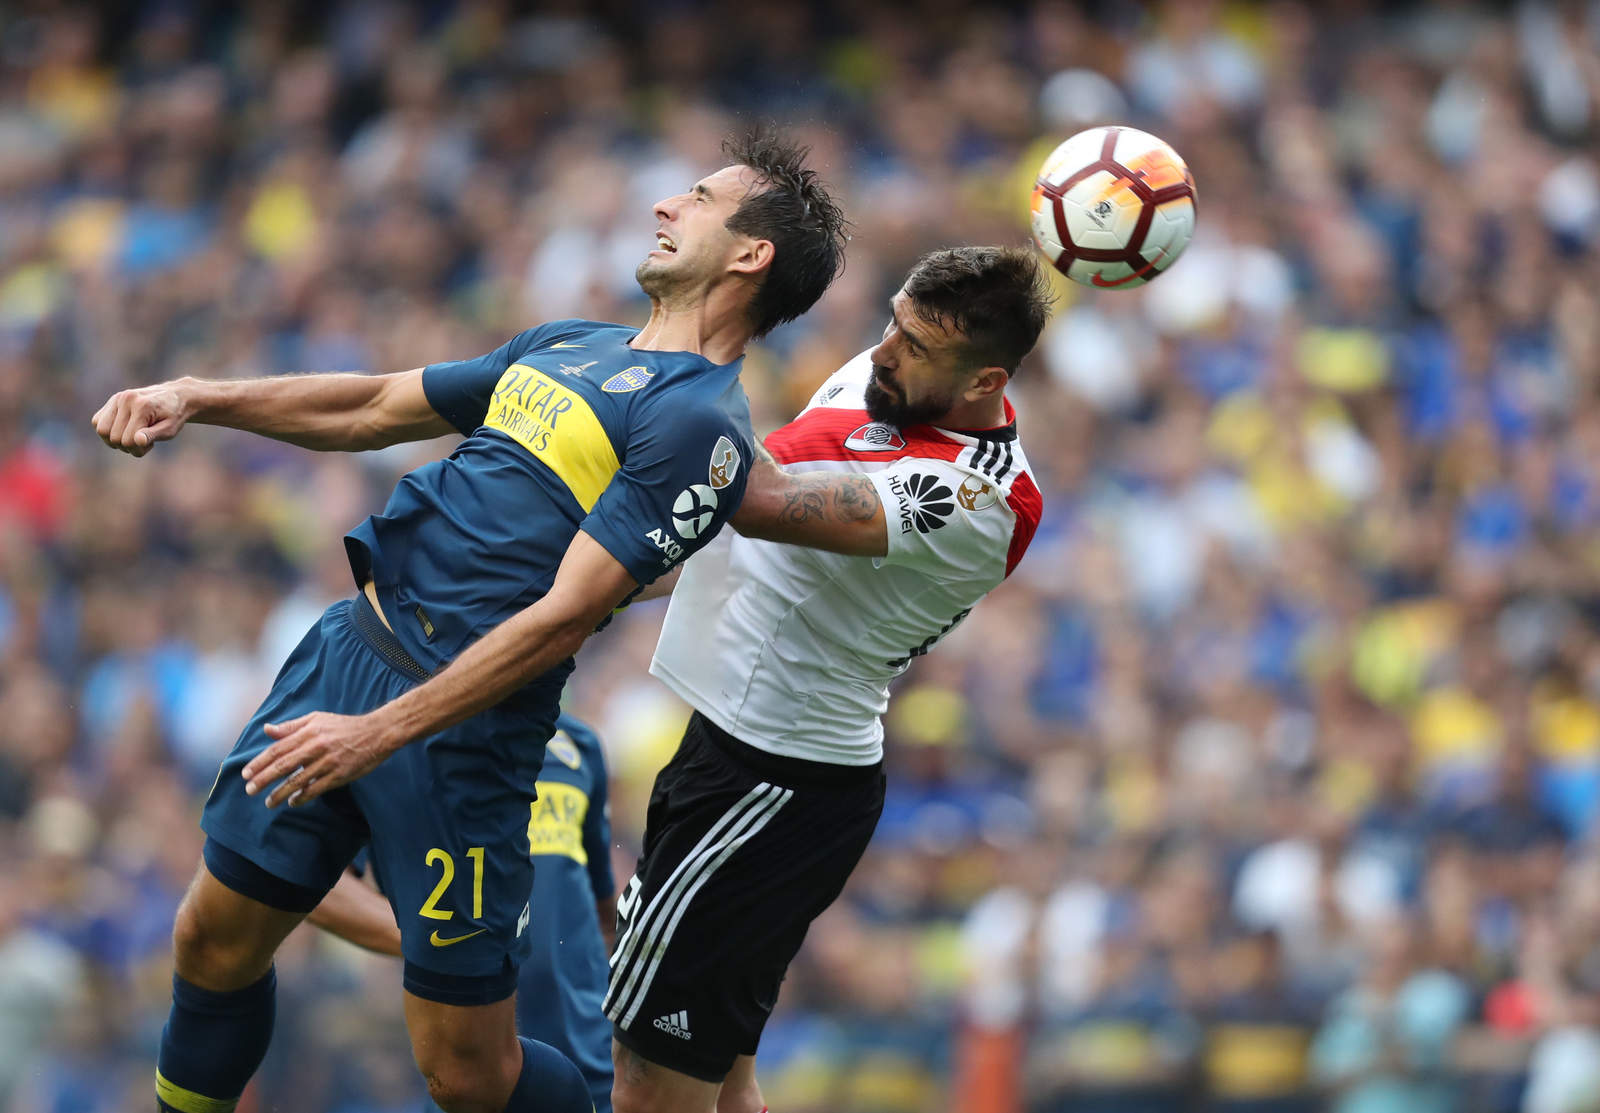 El zaguero Carlos Izquierdoz rosó accidentalmente la pelota para cambiarle la dirección y marcar un autogol ante River Plate.